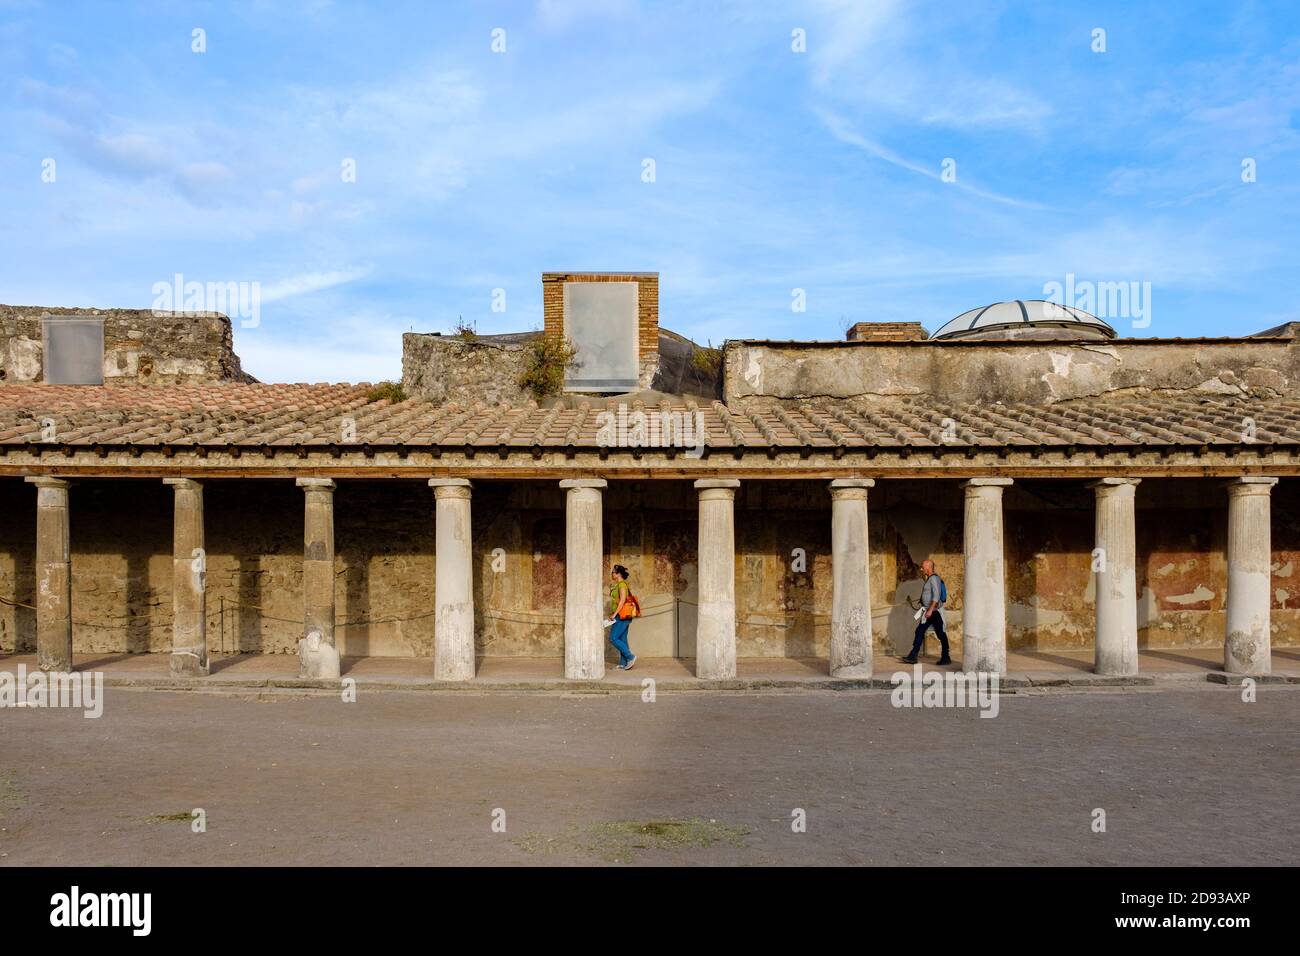 Turisti che camminano tra le colonne all'esterno delle Terme Stabiane, le antiche rovine del complesso termale romano, Pompei, Campania, Italia Foto Stock